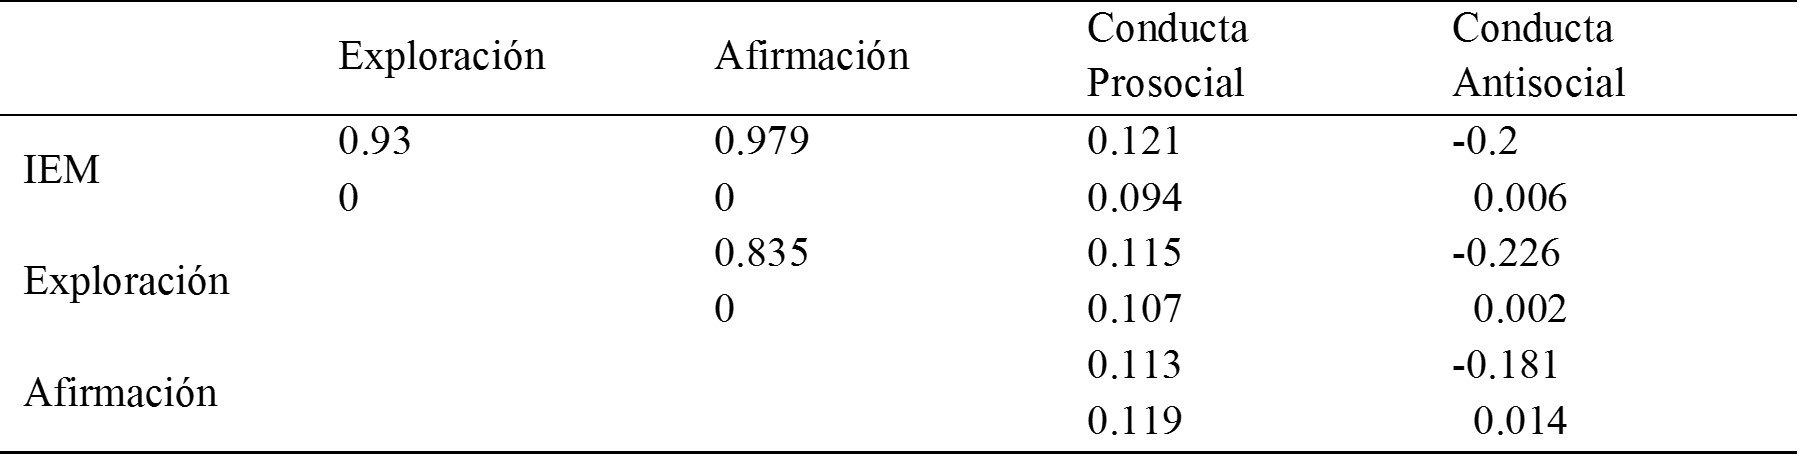 
Matriz de correlaciones entre la
identidad étnica total, sus dimensiones de Afirmación y Exploración del IEM con
las conductas prosociales y antisociales del CACSA
